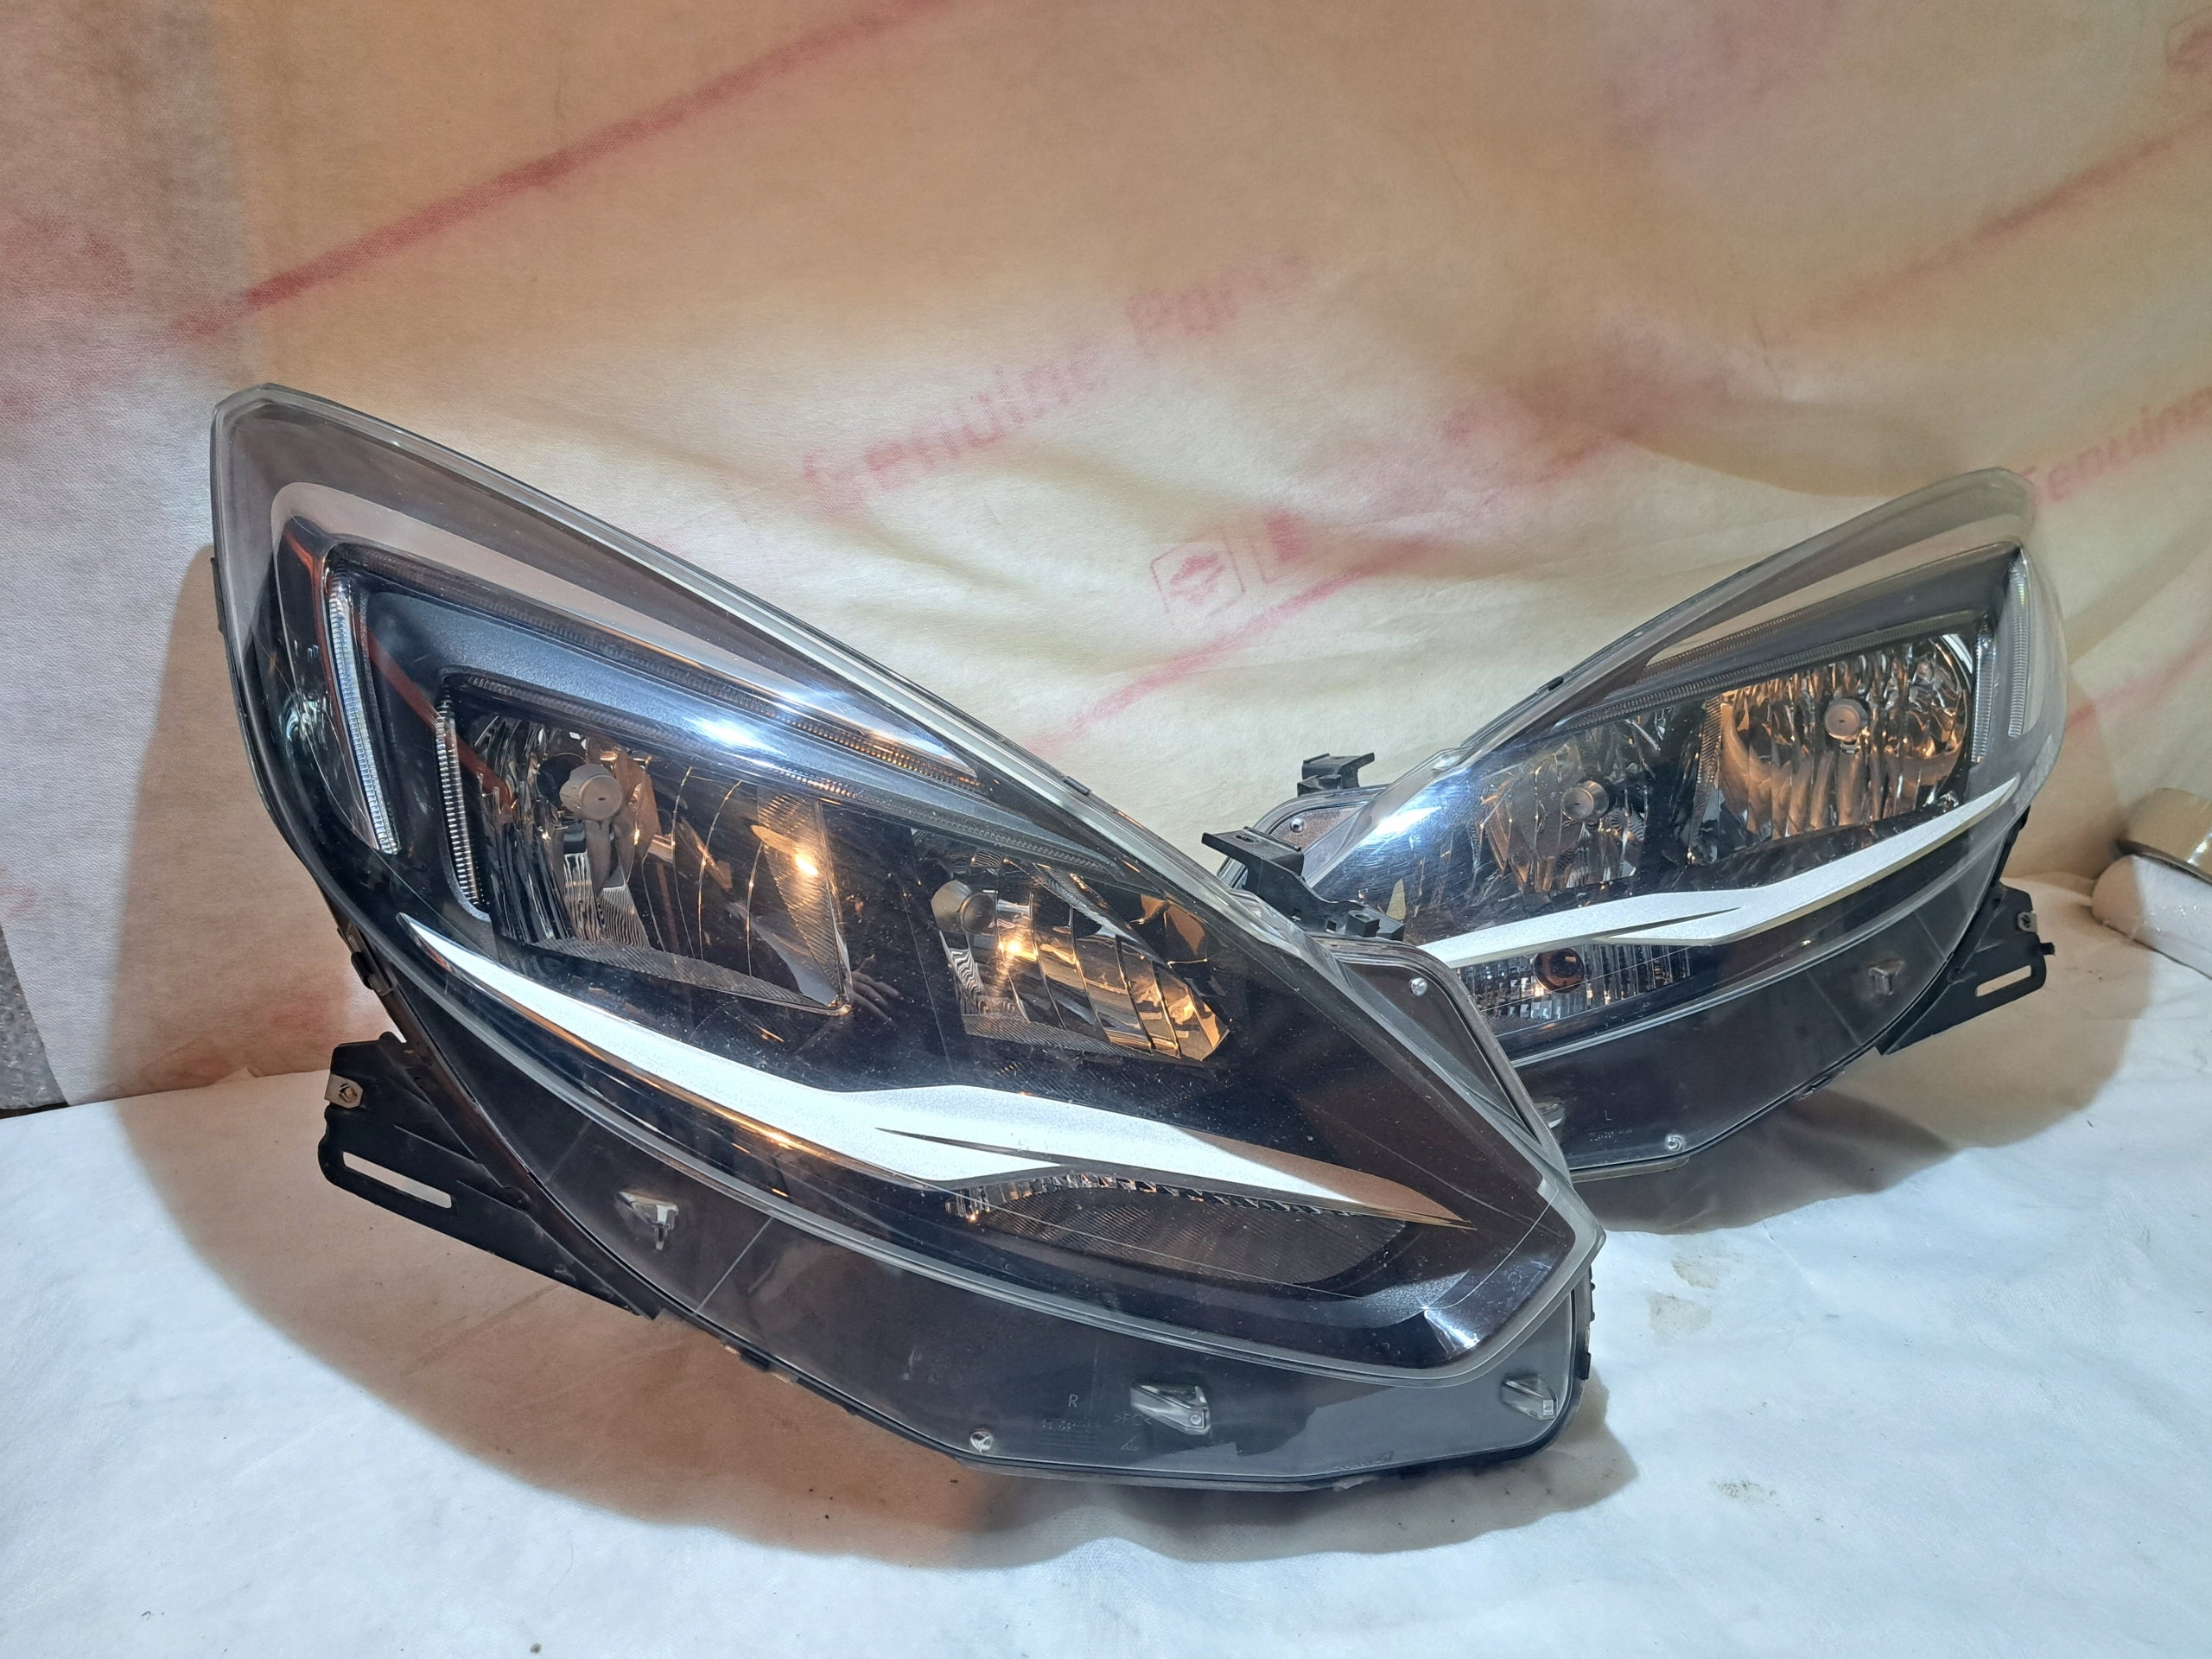 Frontscheinwerfer Opel Zafira Facelift Led Links Original Scheinwerfer Headlight